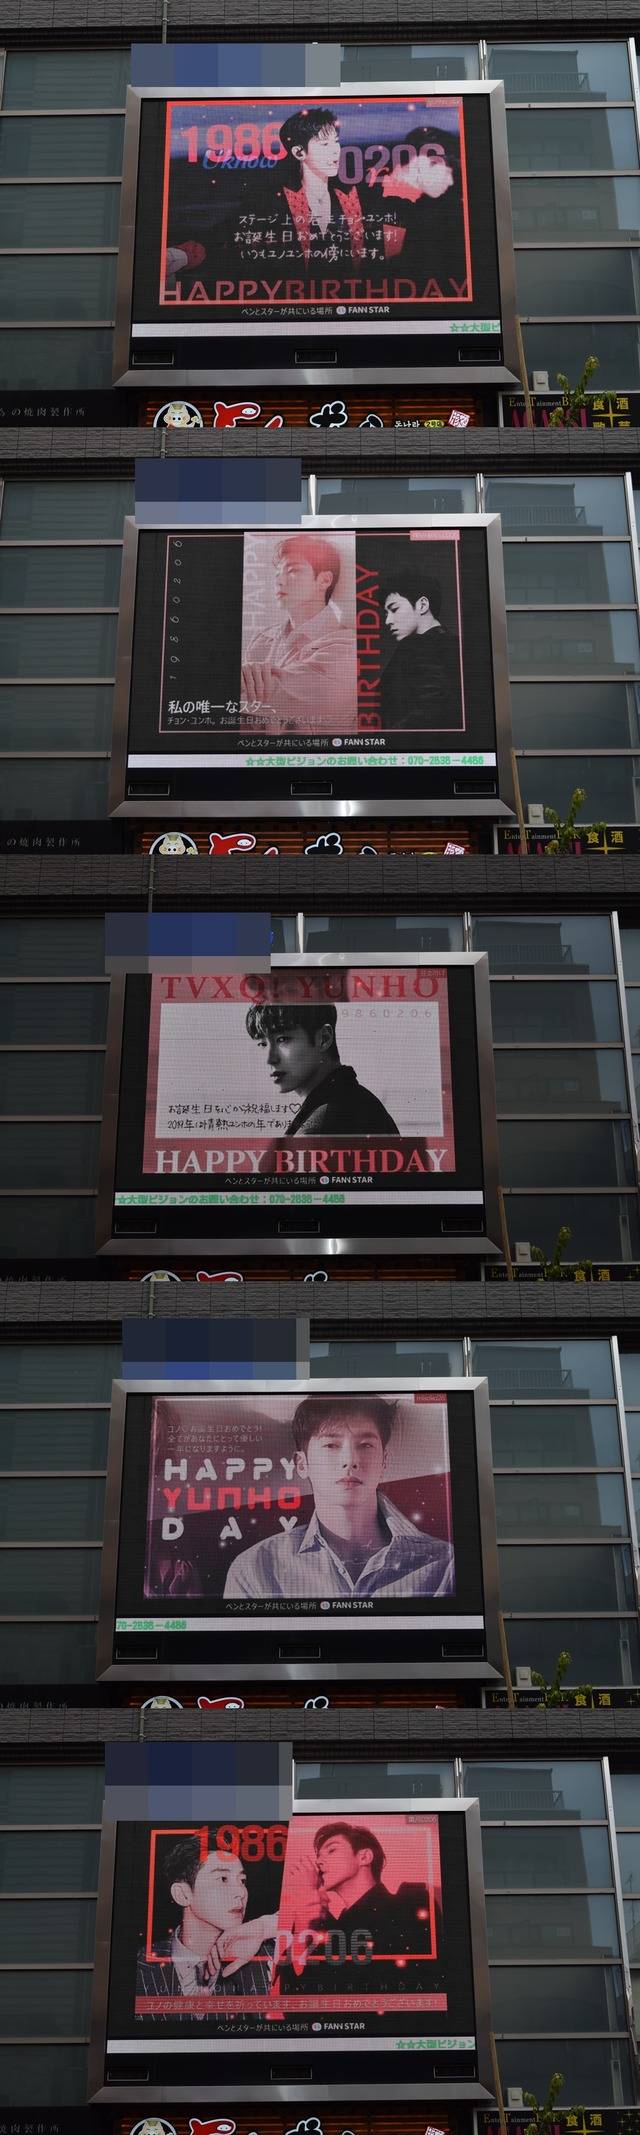 윤호야, 생일 축하해 6일 일본 도쿄에 위치한 전광판에서 듀오 동방신기 유노윤호의 생일을 축하하는 영상이 상영 중이다. /팬앤스타